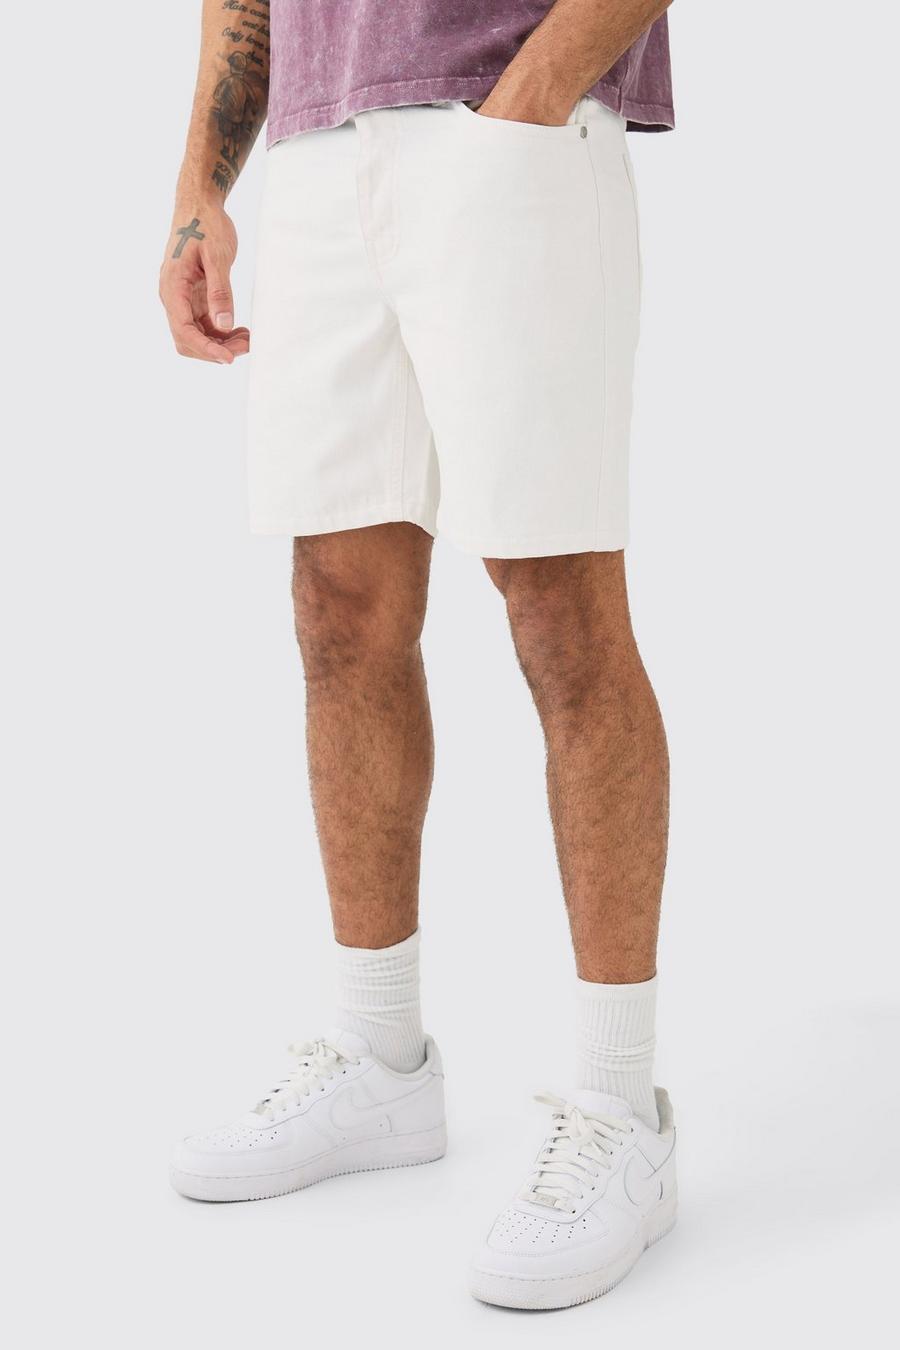 Pantalones cortos vaqueros ajustados sin tratar en blanco, White